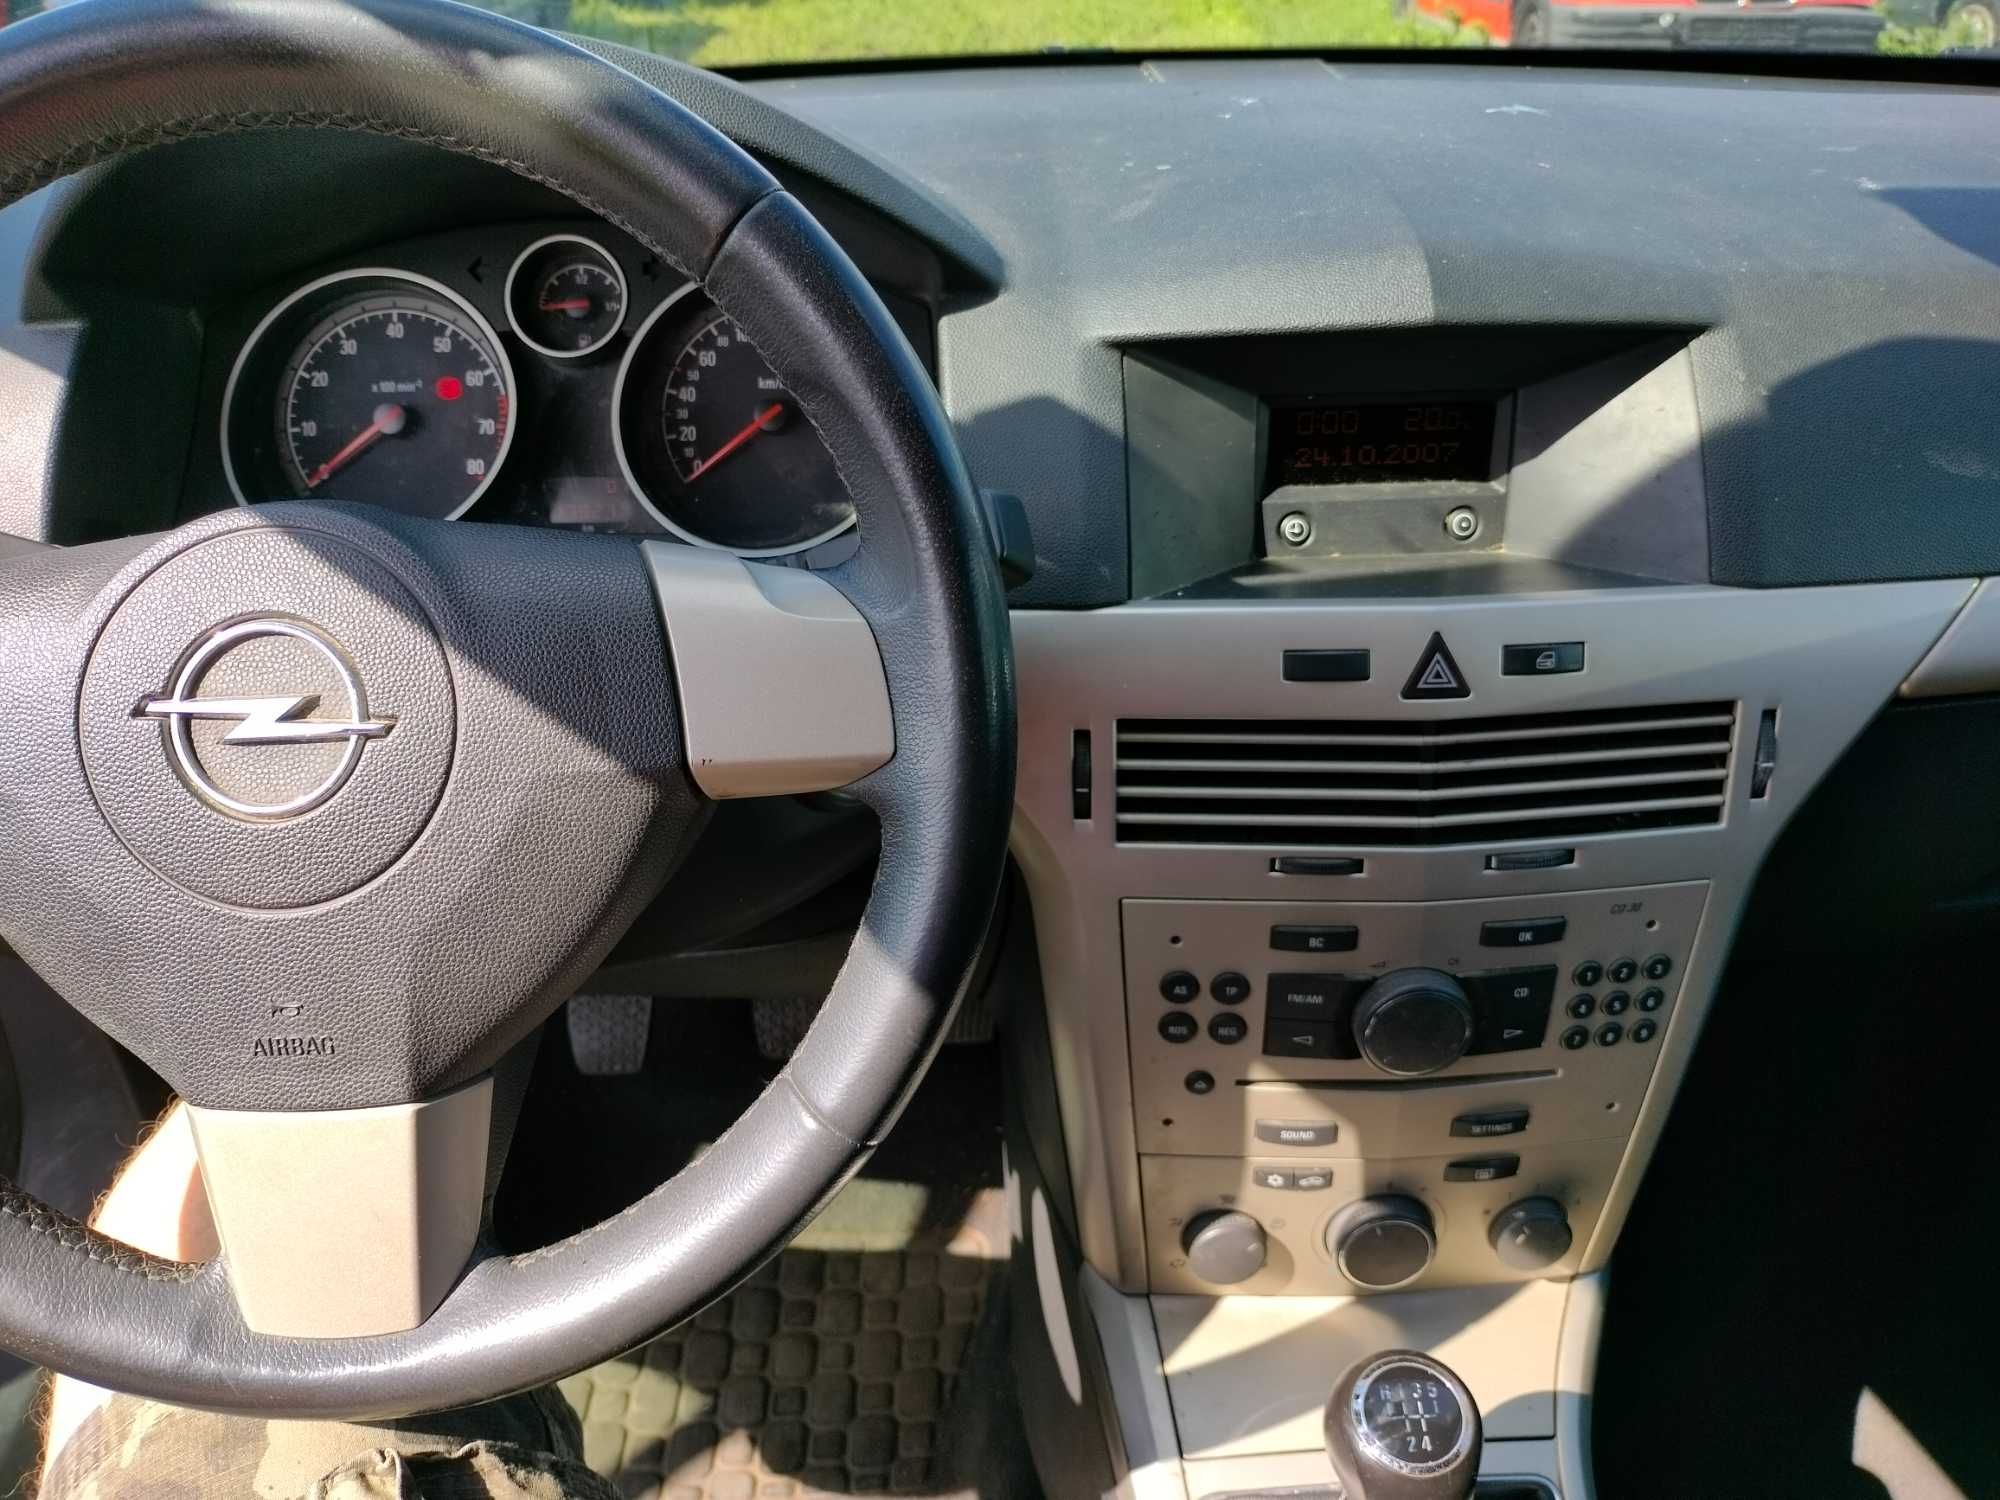 Ładny Opel Astra H 1.4benzyna kombi, klima, elektryka, bez rdzy.